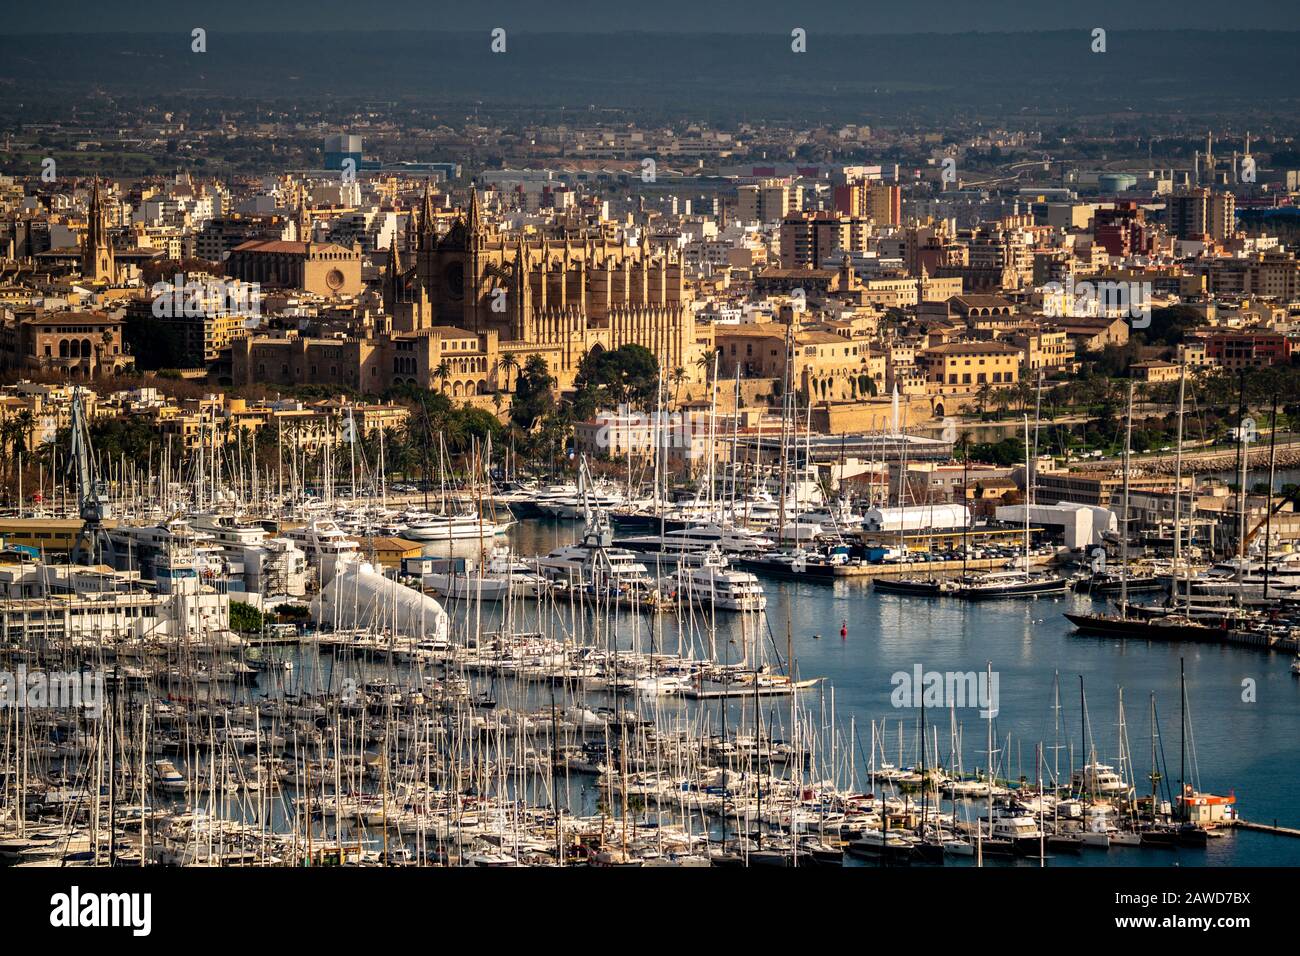 Europa, Spanien, Insel, Mallorca, Yachthafen und Innenstadt Stock Photo